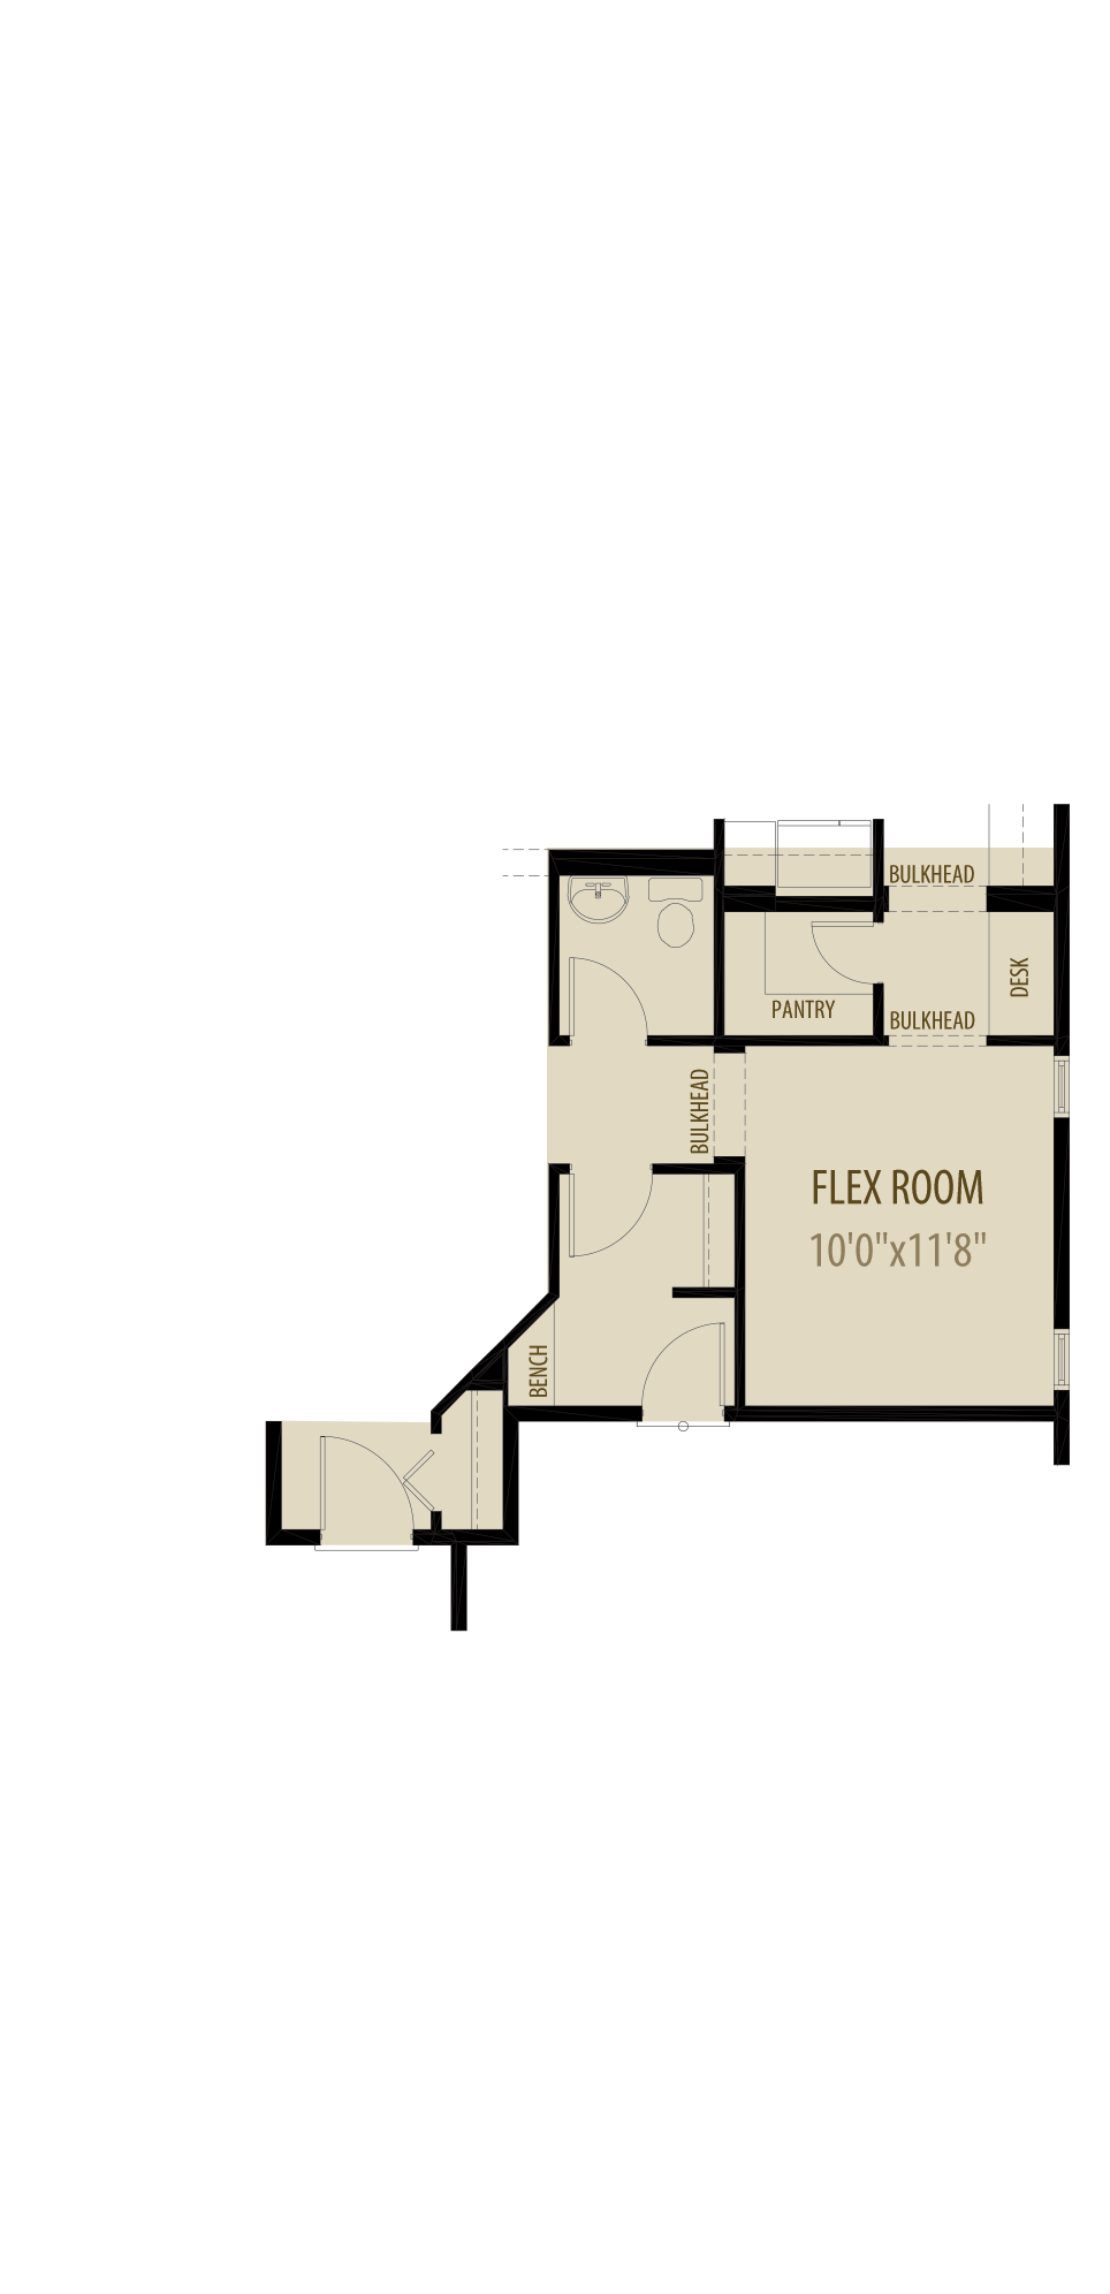 Option 2 Flex Room Adds 165Sq Ft